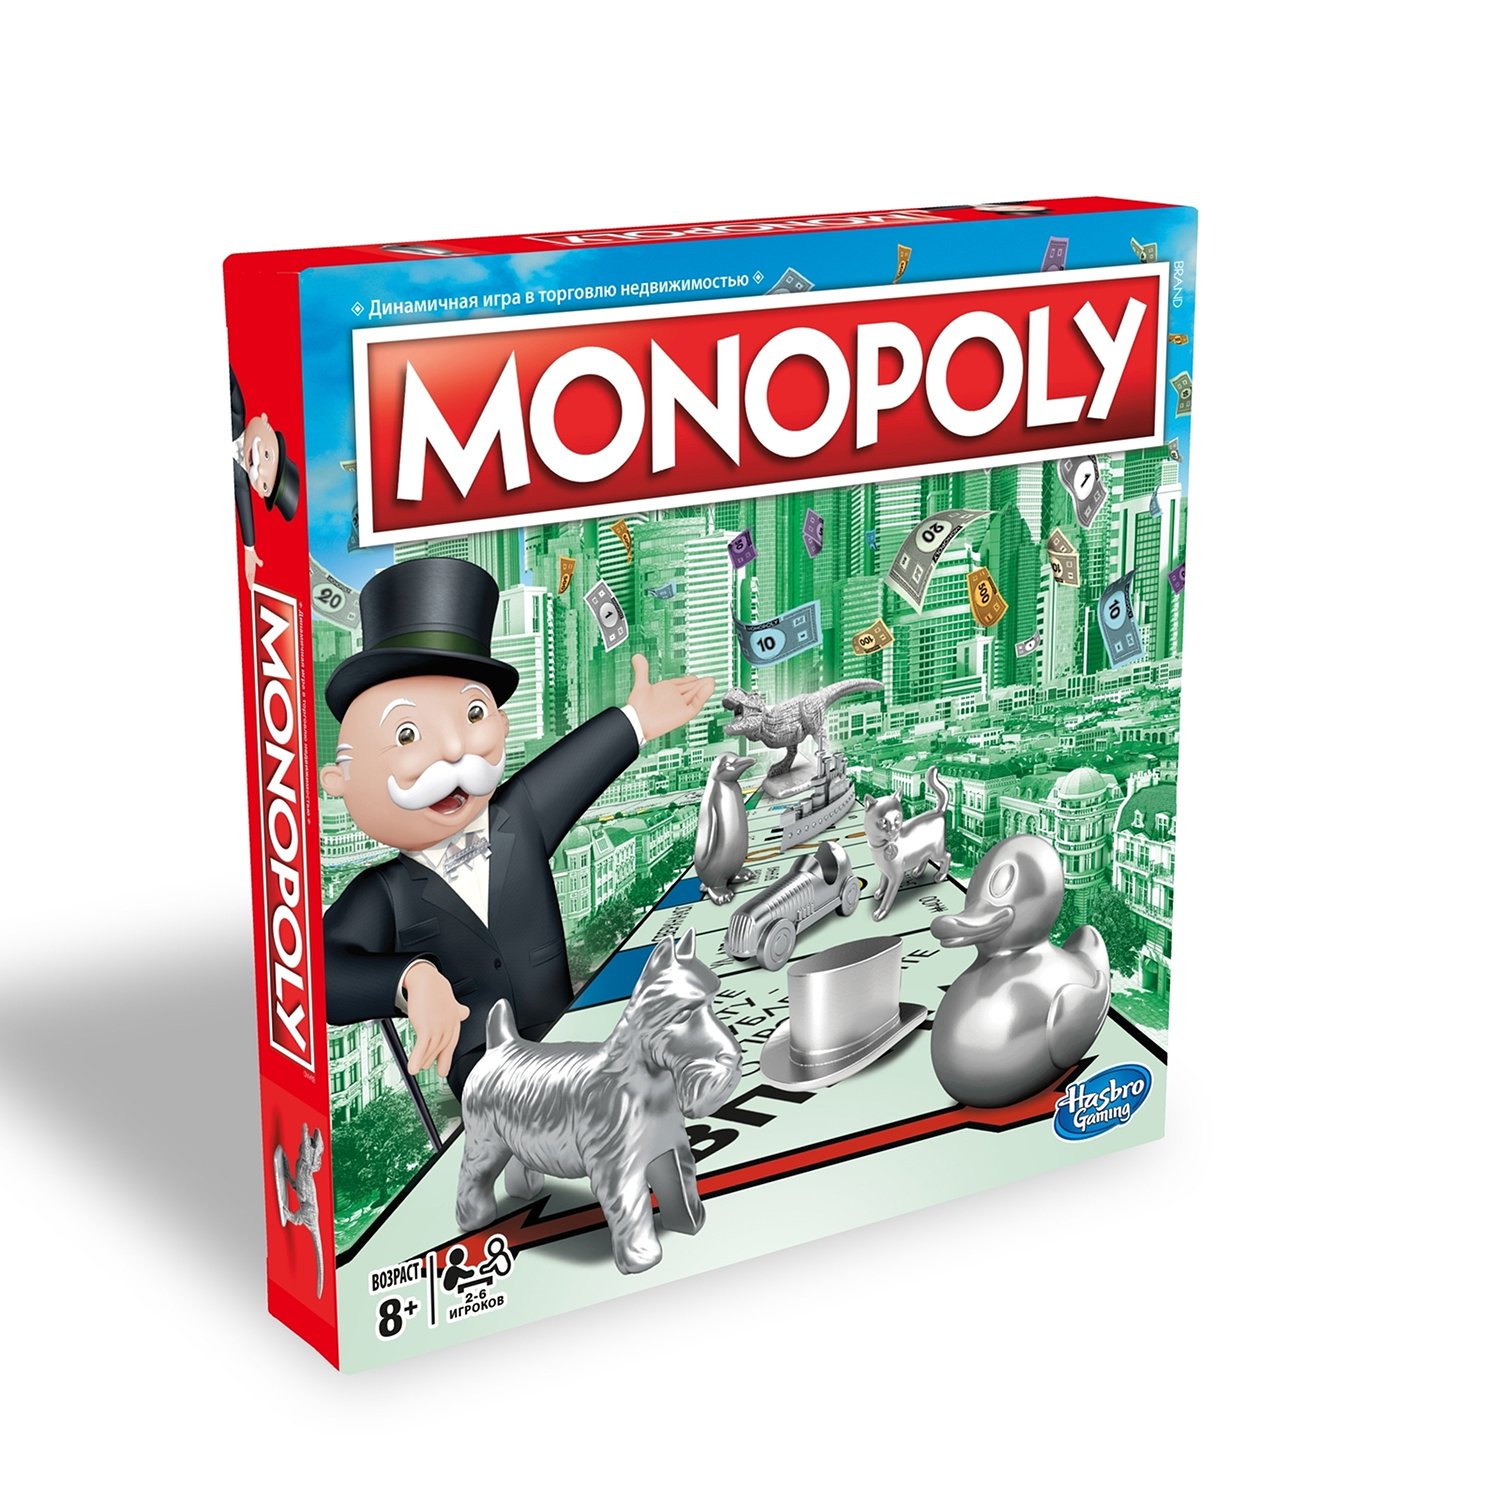 Игра монополия hasbro. Настольная игра Monopoly классическая обновленная c1009. Монополия классическая Хасбро. Игры Хасбро Монополия. Настольная игра Монополия от Хасбро.